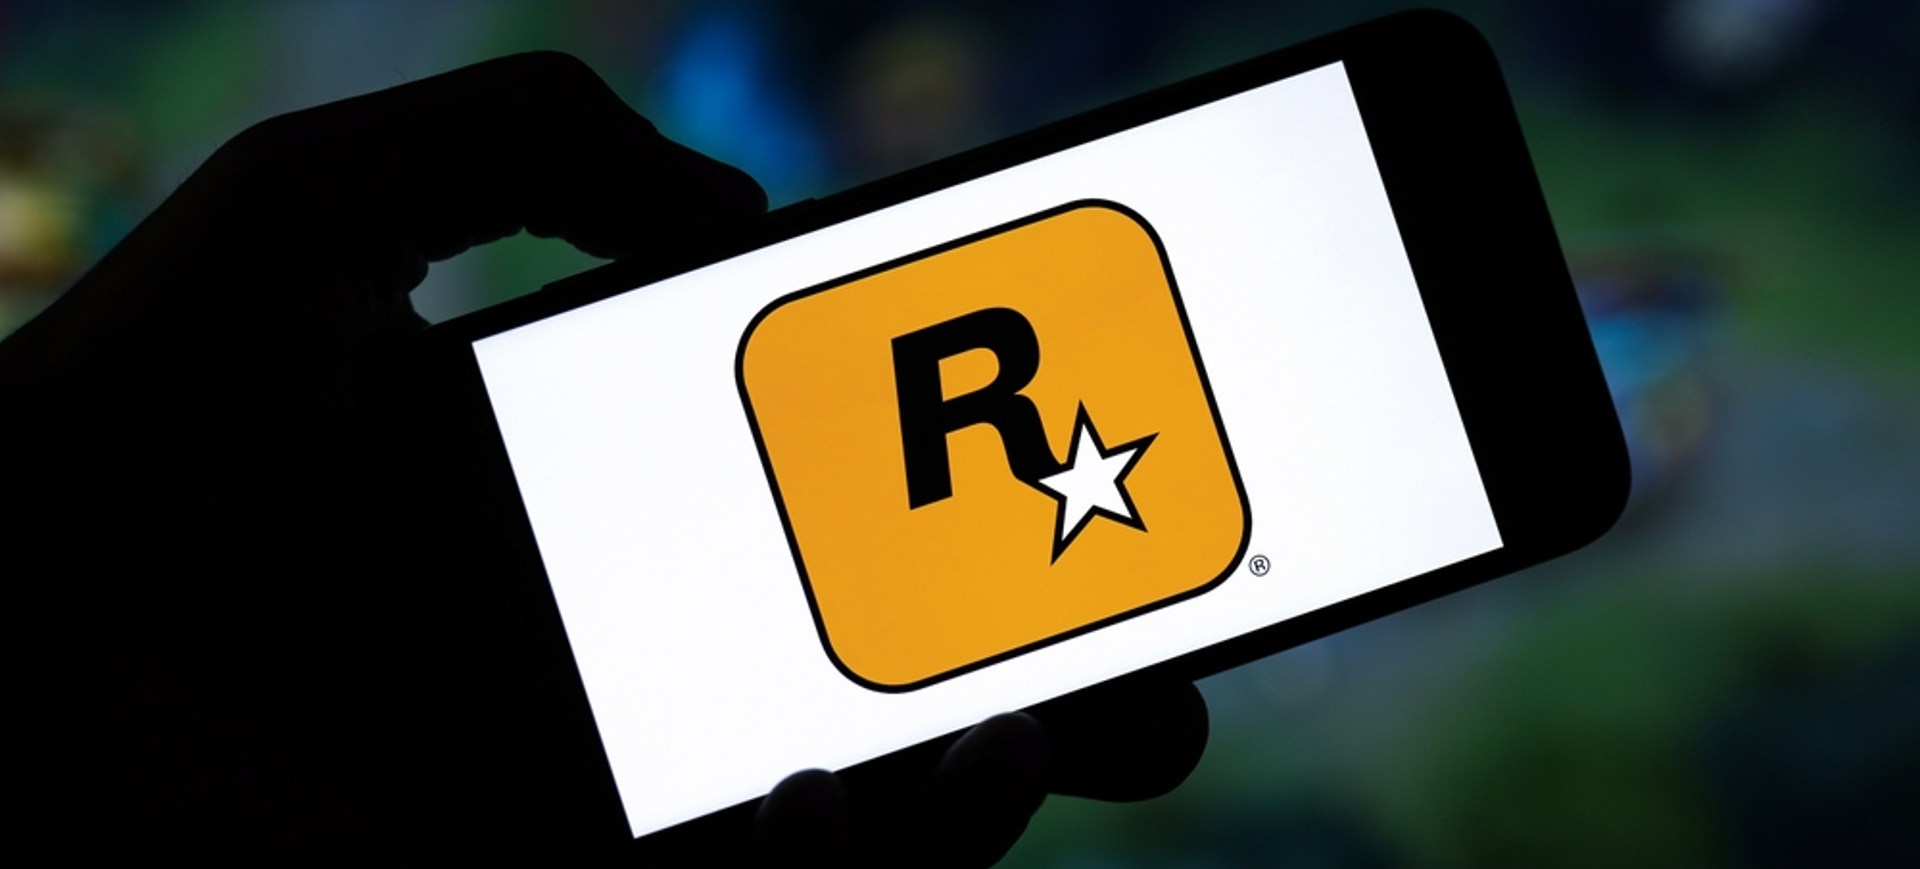 A sombra de uma mão segura um smartphone, o qual exibe em sua tela o logo da desenvolvedora Rockstar Games